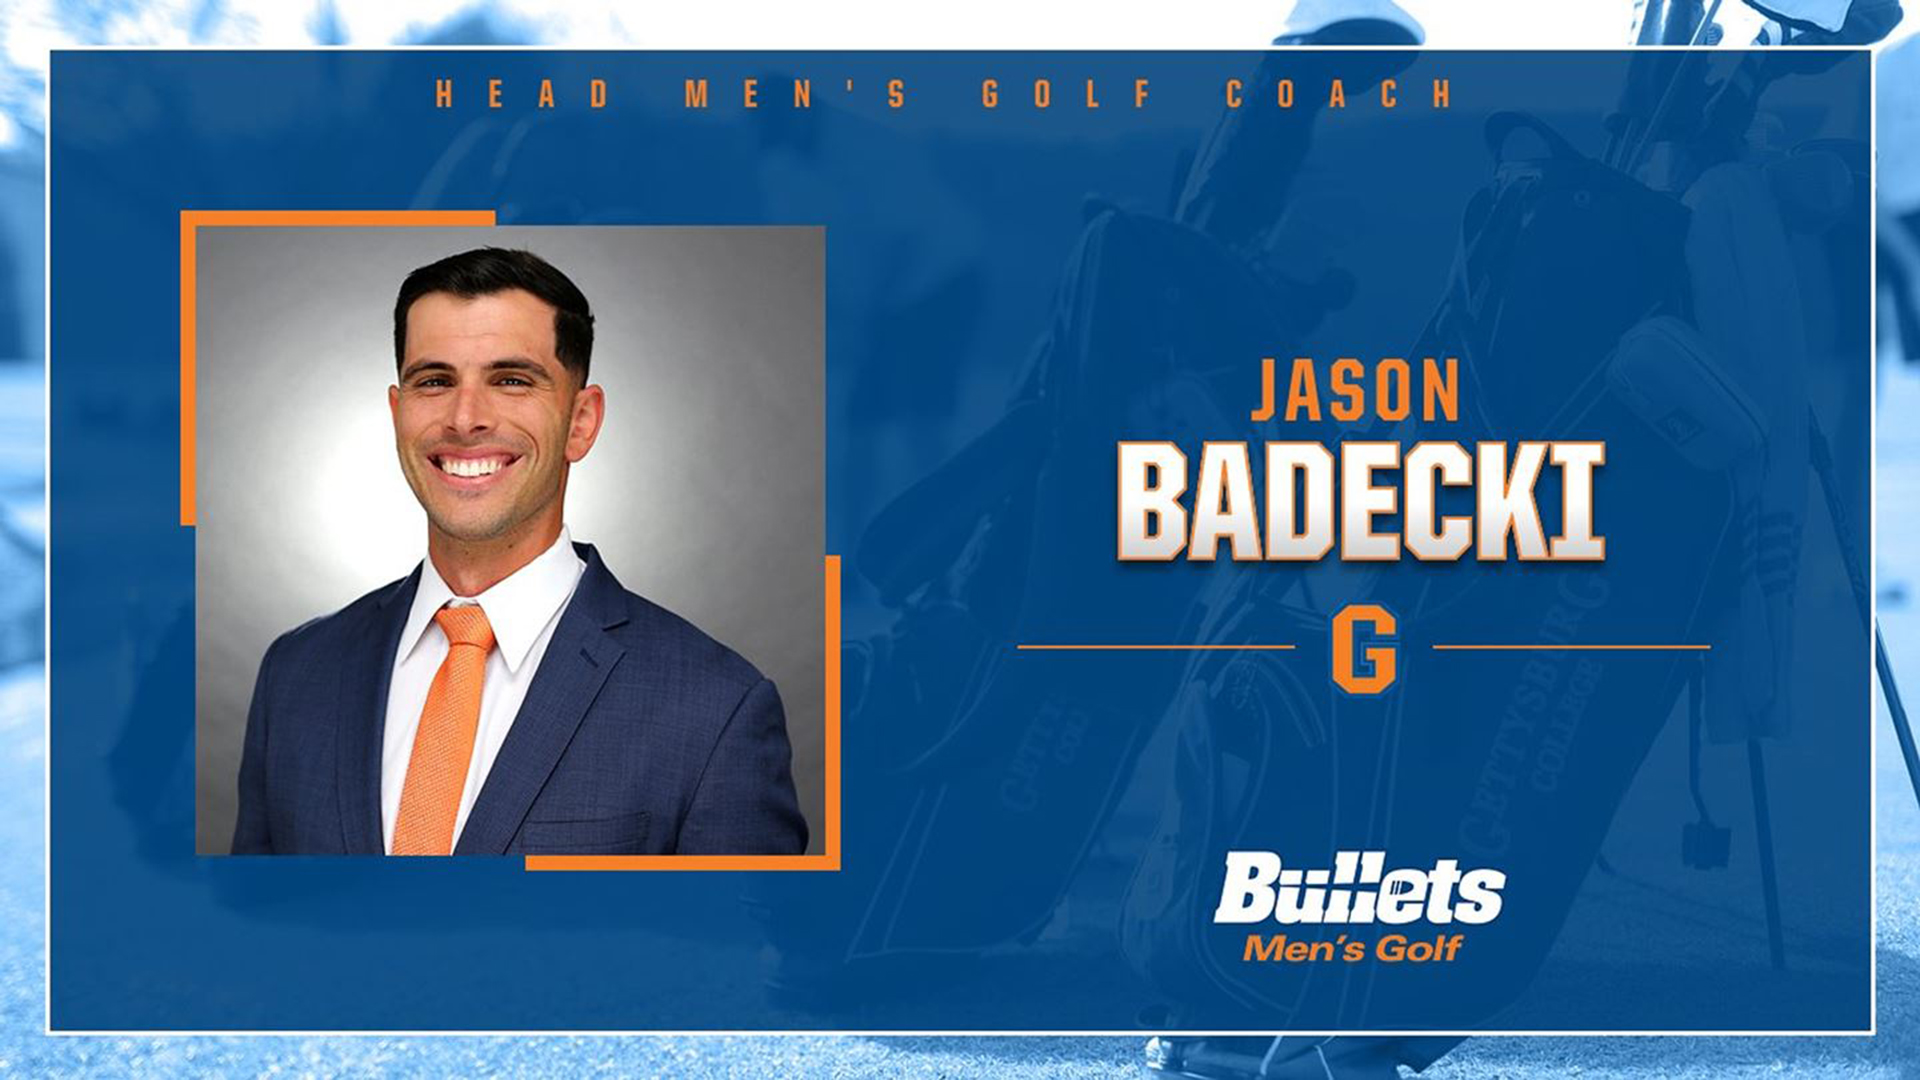 Badecki Tabbed to Take Over Gettysburg Men's Golf Program